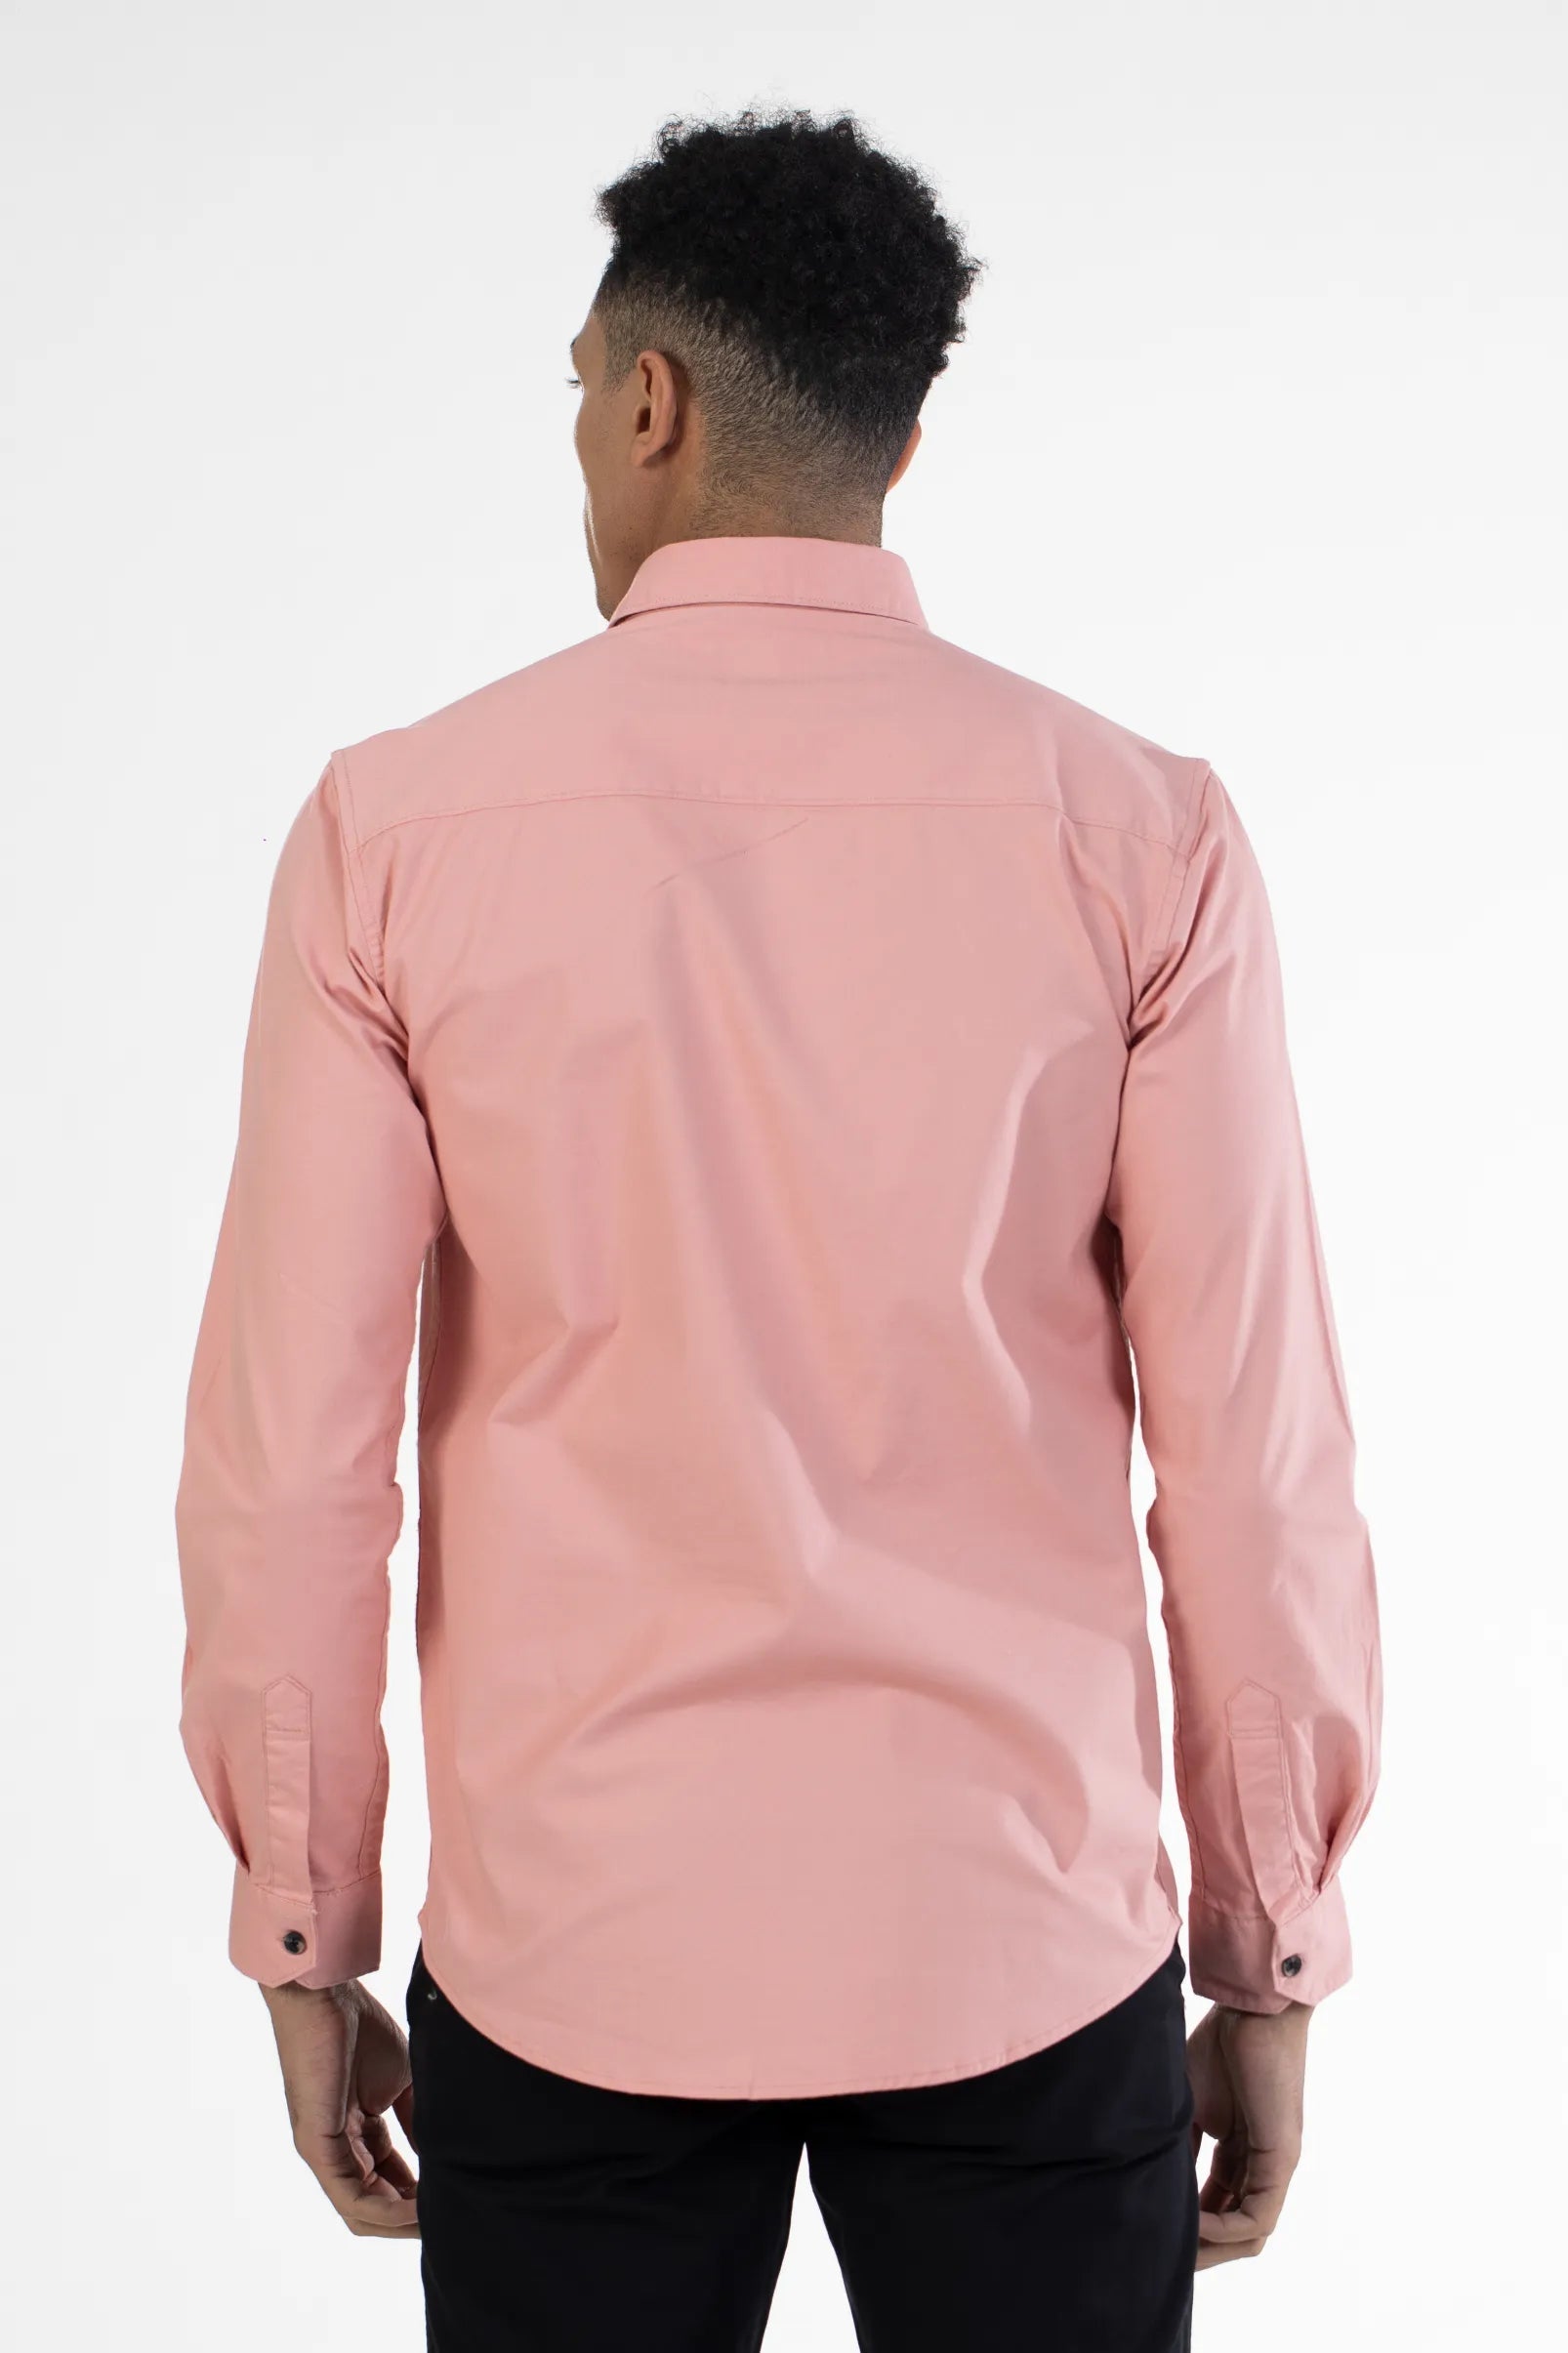 Buy Welt Pocket Plain Oxford Shirt Online.